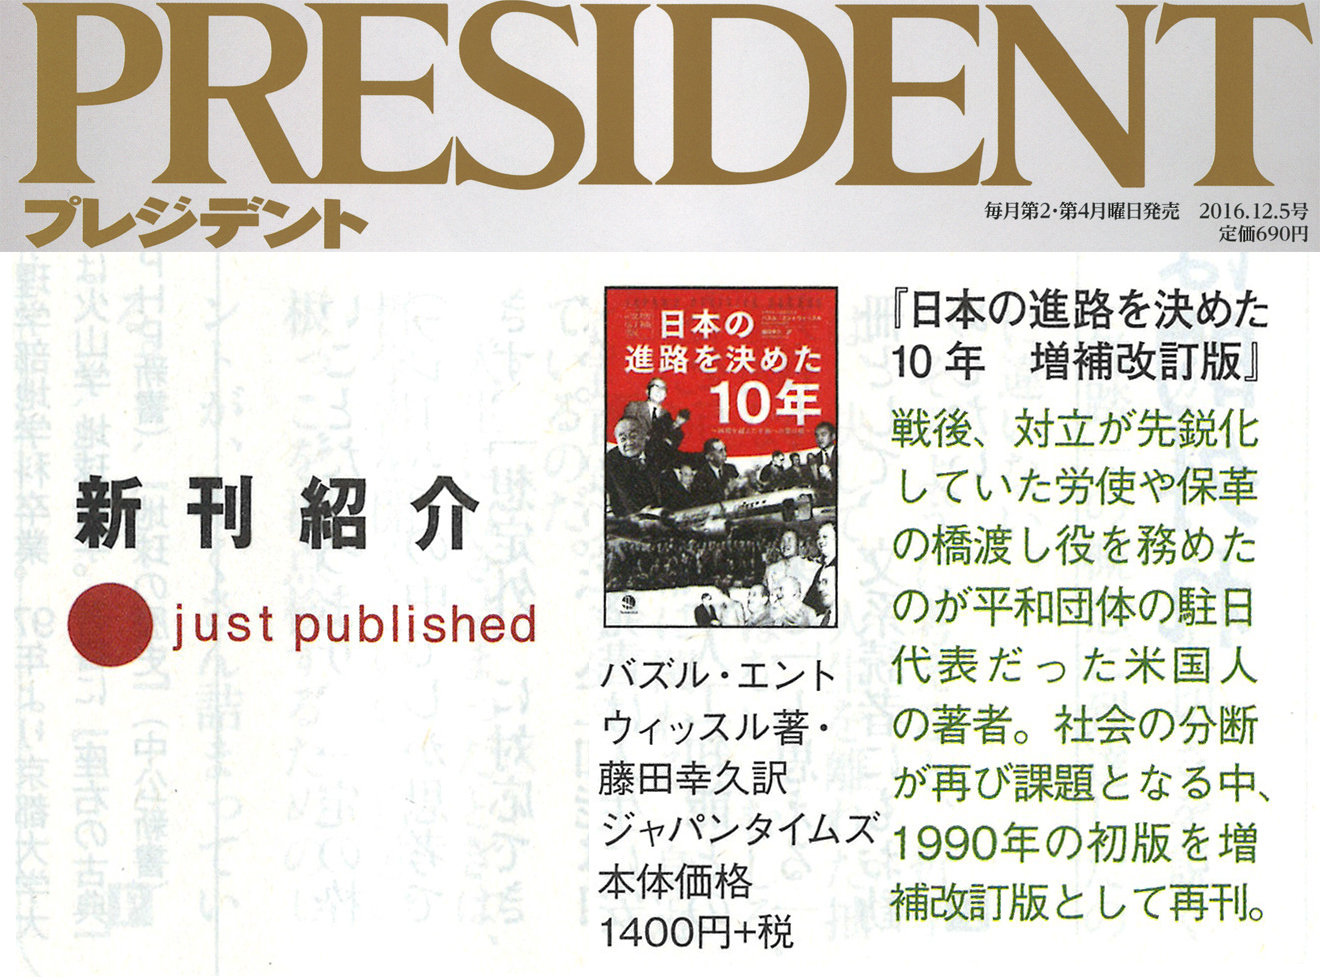 【PRESIDENT(プレジデント)】新刊紹介「日本の進路を決めた10年 増補改訂版」